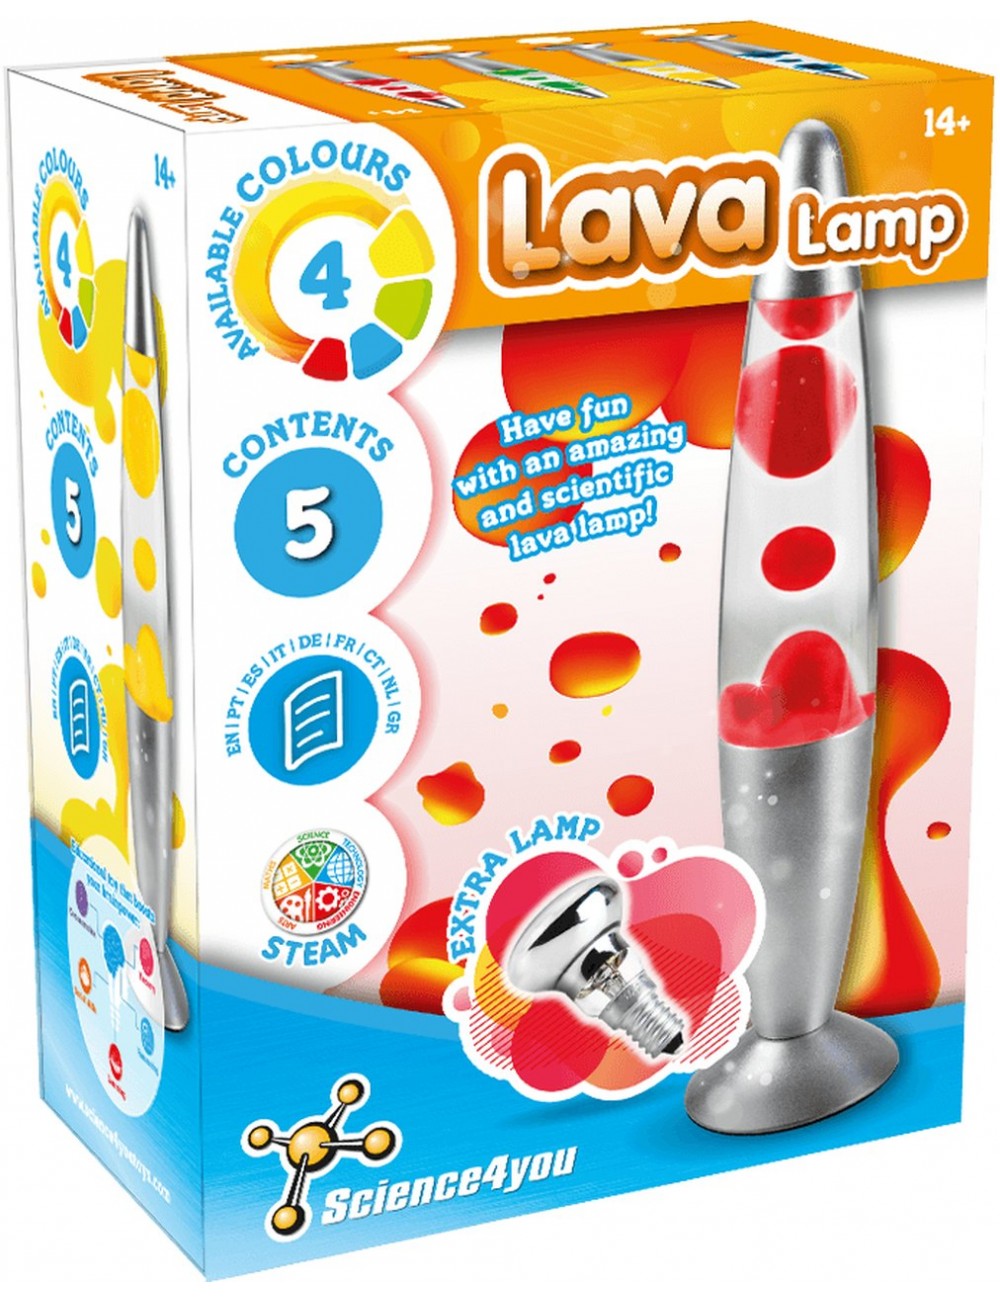 Optimisme Sluimeren Cyclopen Lava Lamp | Educational and Scientific Toy for Children 14+ | Science4you